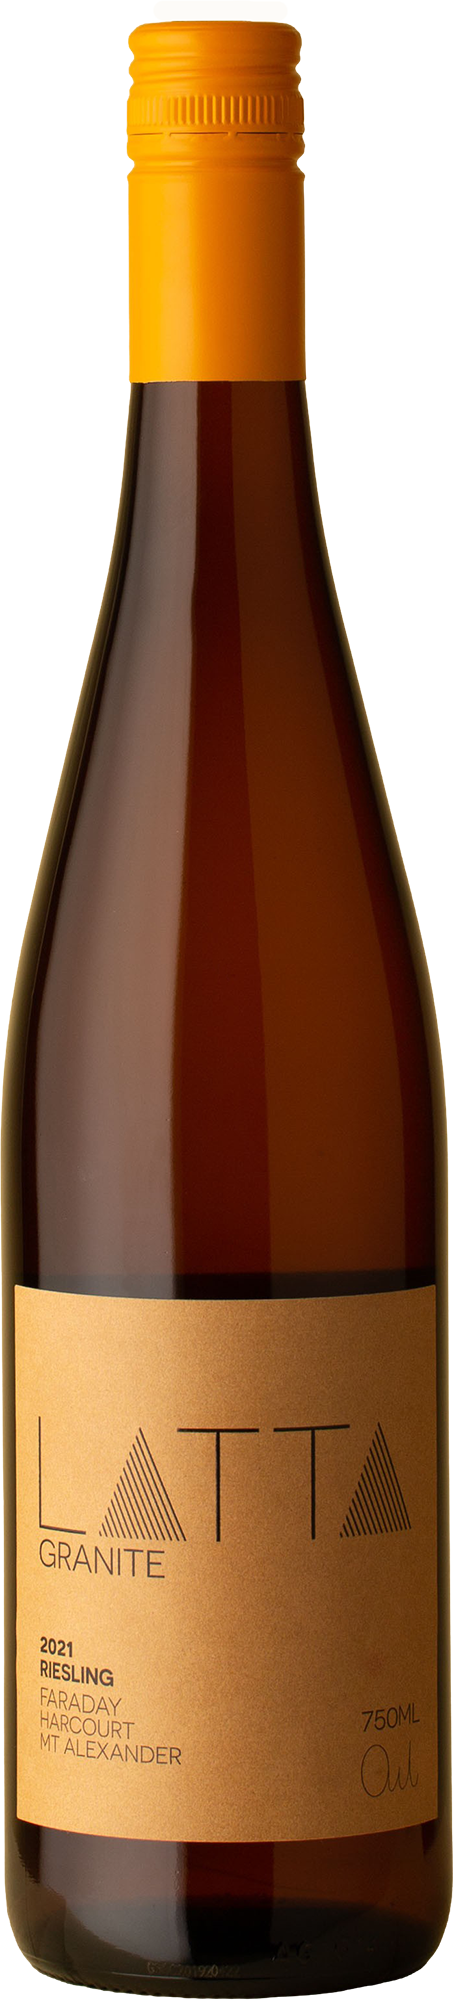 Latta - Granite Riesling 2021 White Wine